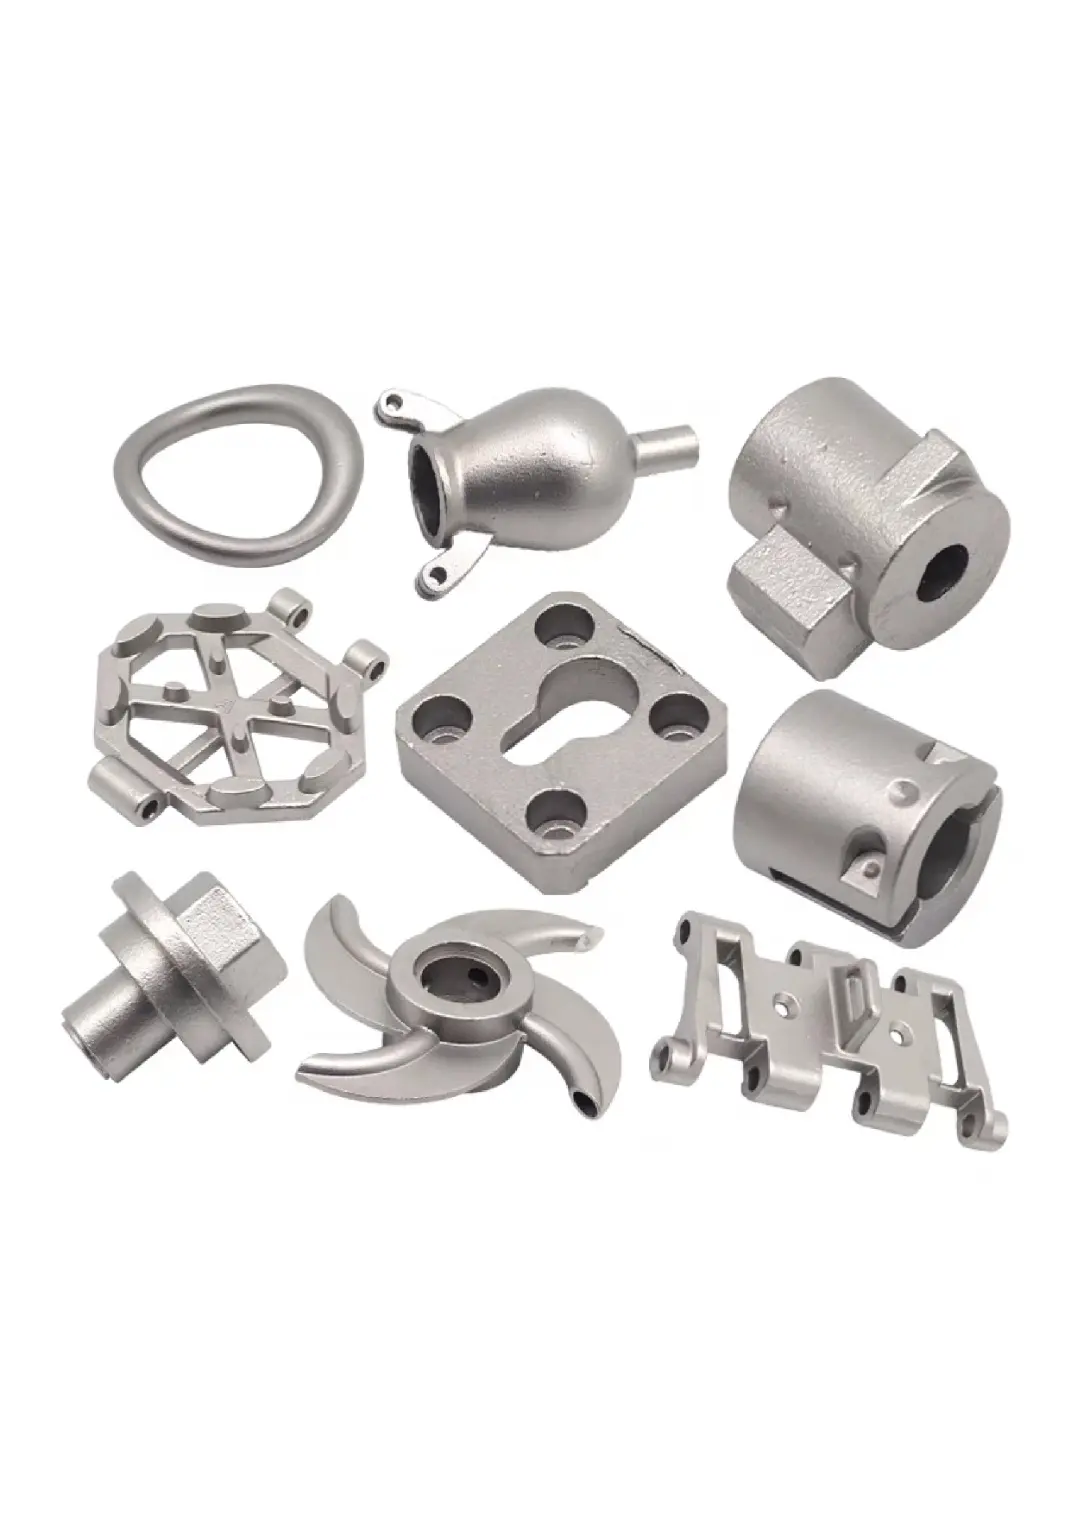 Fabriek Oem Metalen Deel Custom Metaal Gietvormen Voor Spuitgieten Aluminium Onderdelen Voor Machine